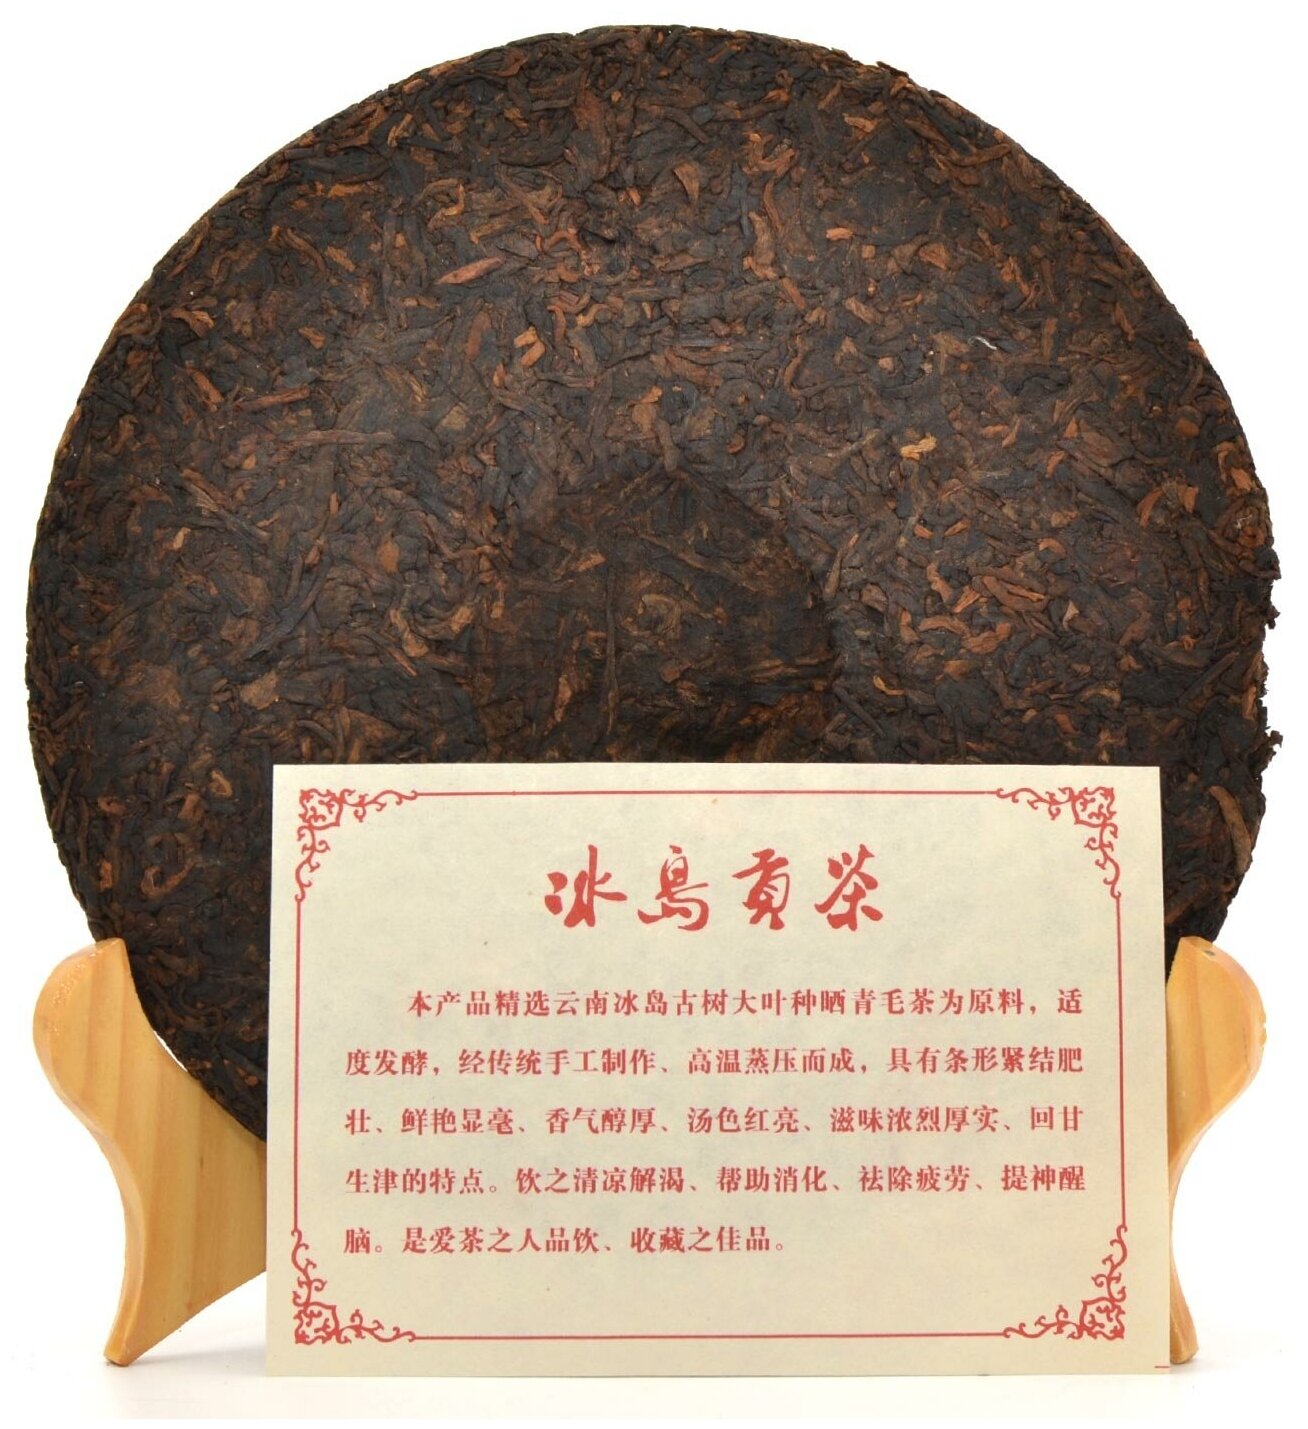 Чай китайский Шу Пуэр "Путь Древности" 2003 год блин 357 грамм, черный бодрящий прессованный Пу Эр для похудения, дворцовый гун тин - фотография № 2